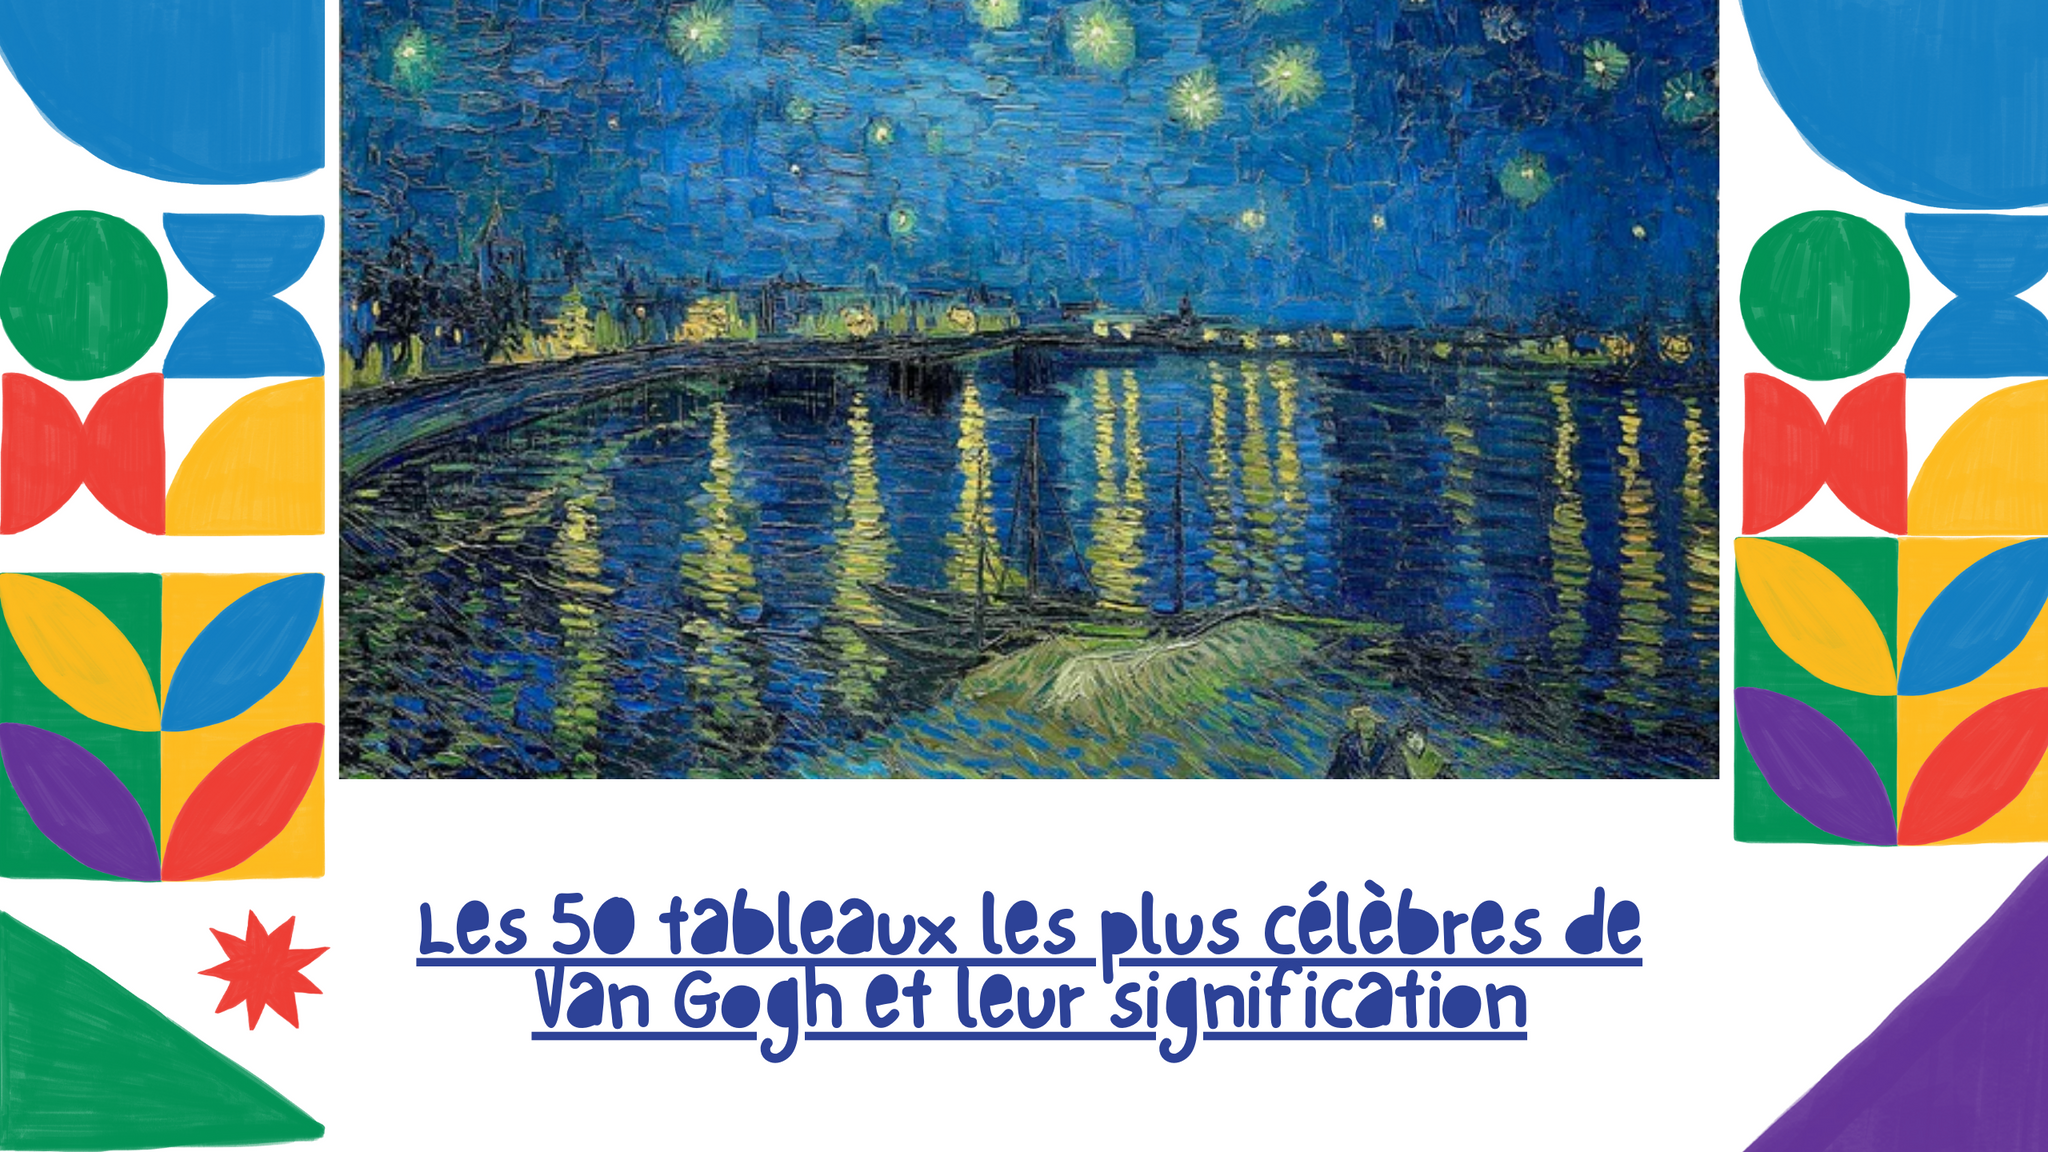 Les 50 tableaux les plus célèbres de Van Gogh et leur signification